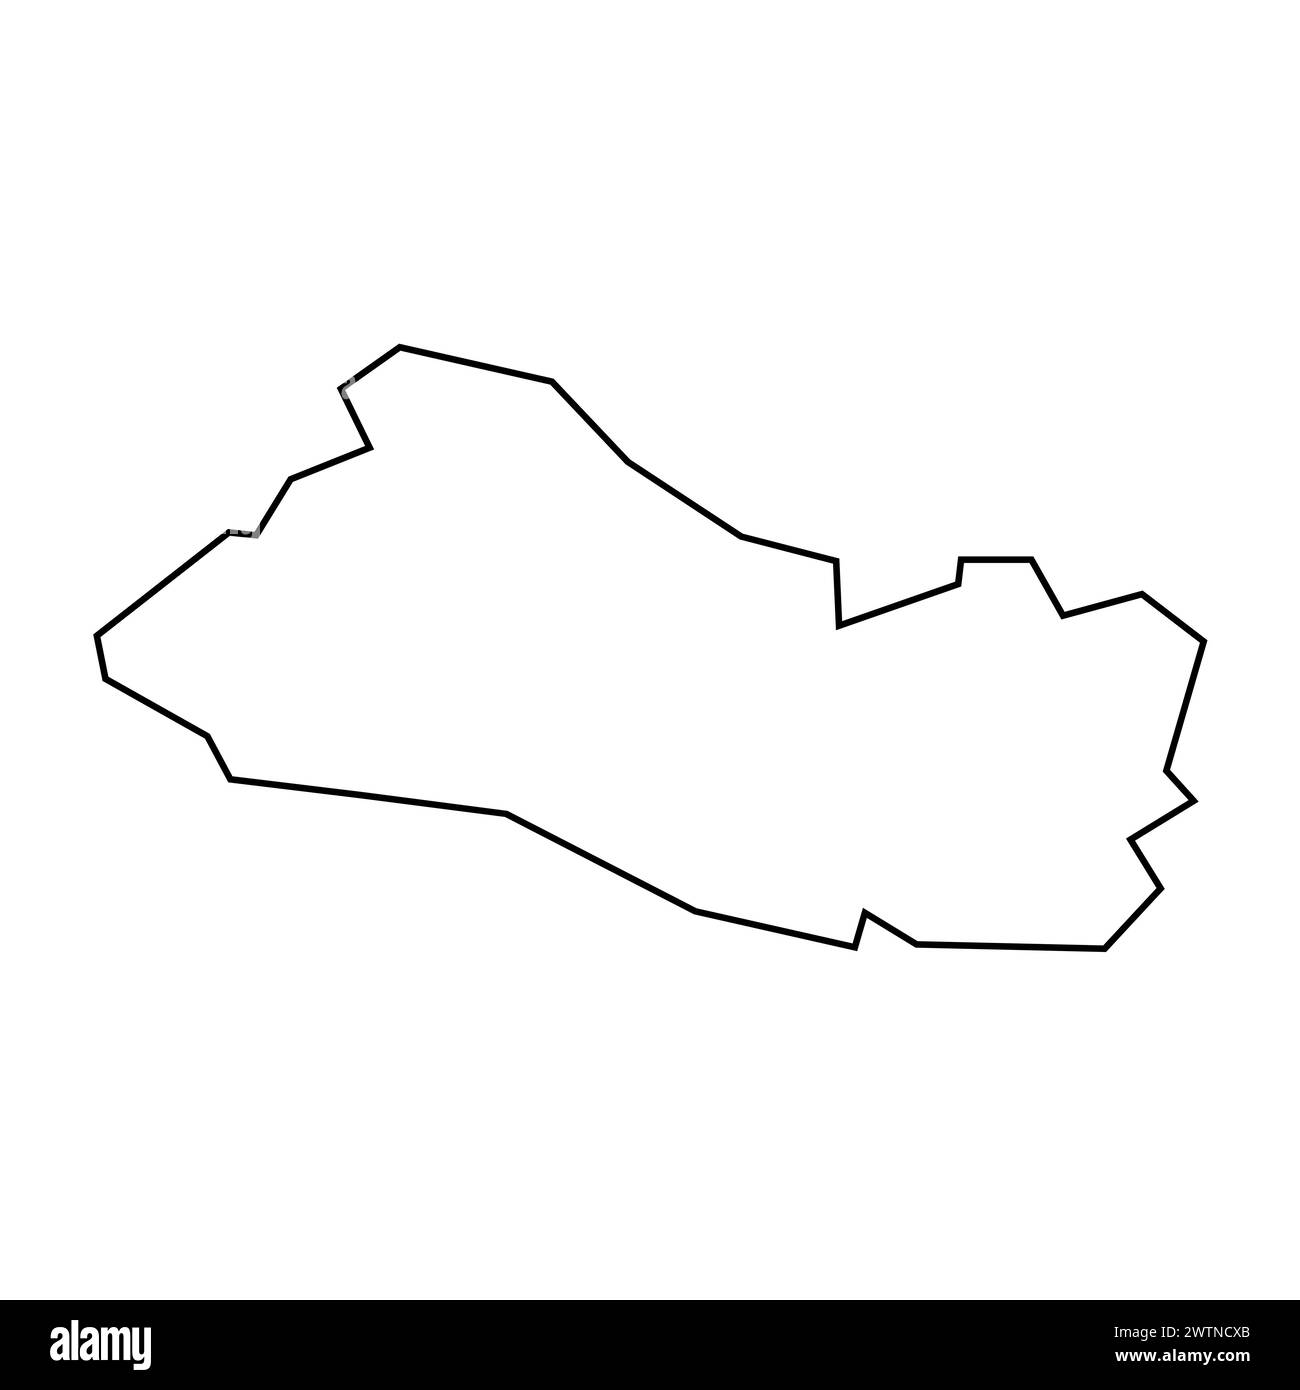 El Salvador Country sottile silhouette nera. Mappa semplificata. Icona vettoriale isolata su sfondo bianco. Illustrazione Vettoriale